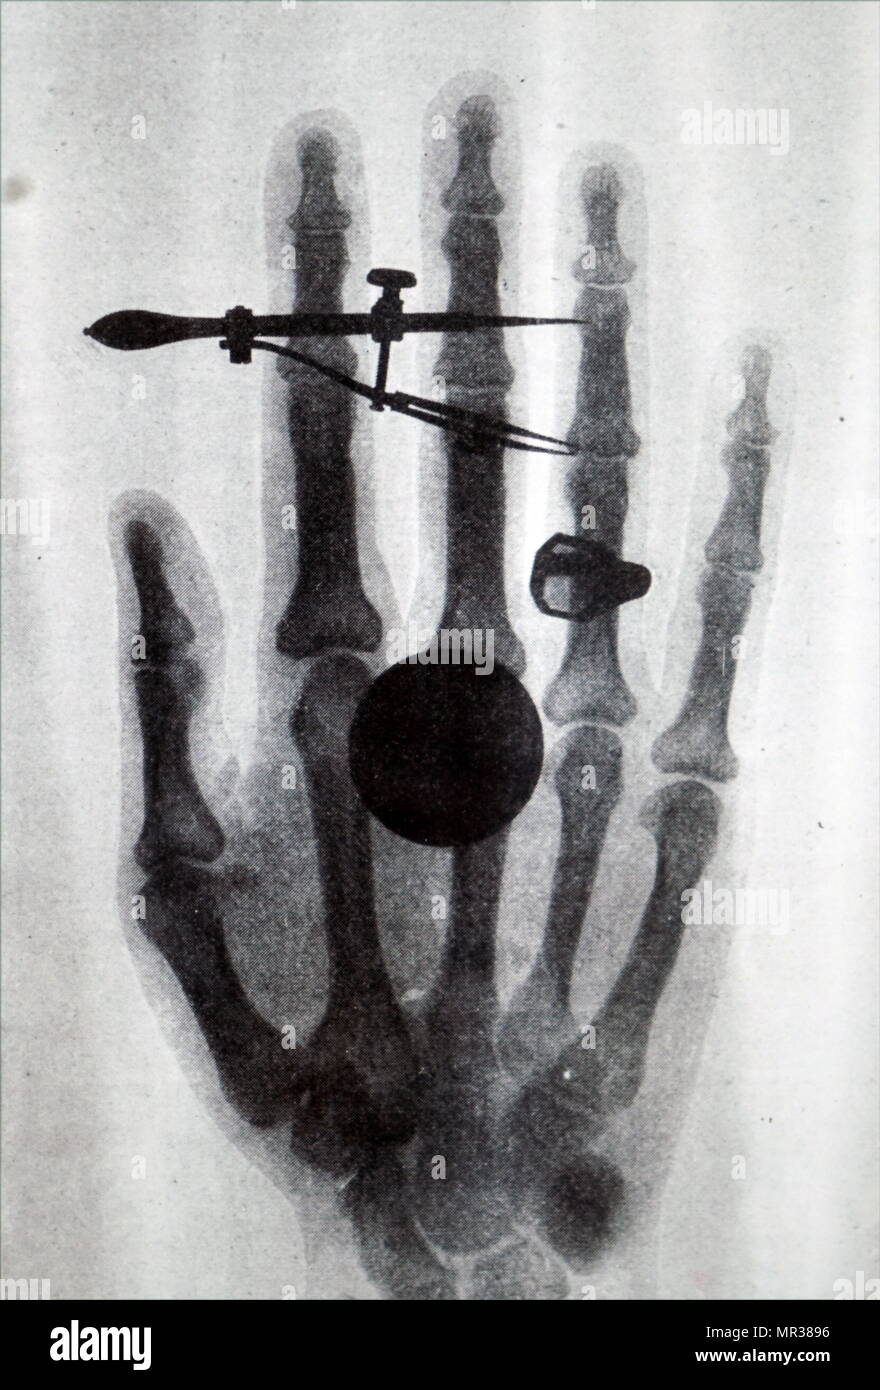 Inizio Röntgen X-Ray di Wilhelm Röntgen moglie per la mano. Wilhelm Röntgen (1845-1923) un tedesco ingegnere meccanico e fisico che prodotto e rilevata la radiazione elettromagnetica in un intervallo di lunghezza d'onda nota come raggi X di raggi Röntgen. Datata del XIX secolo Foto Stock